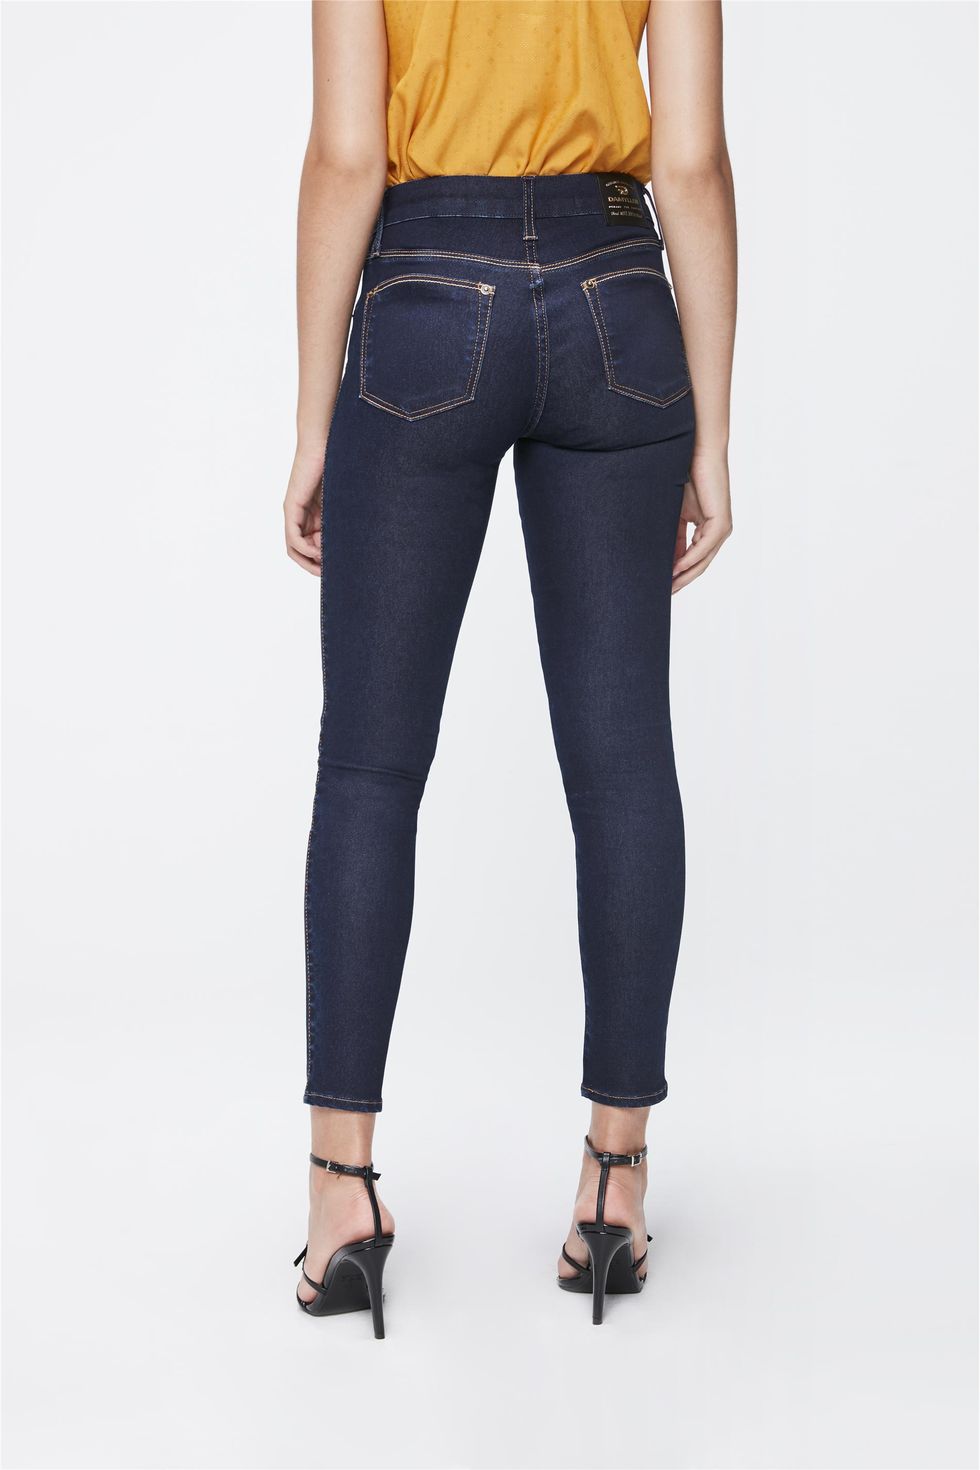 calça jeans damyller feminina